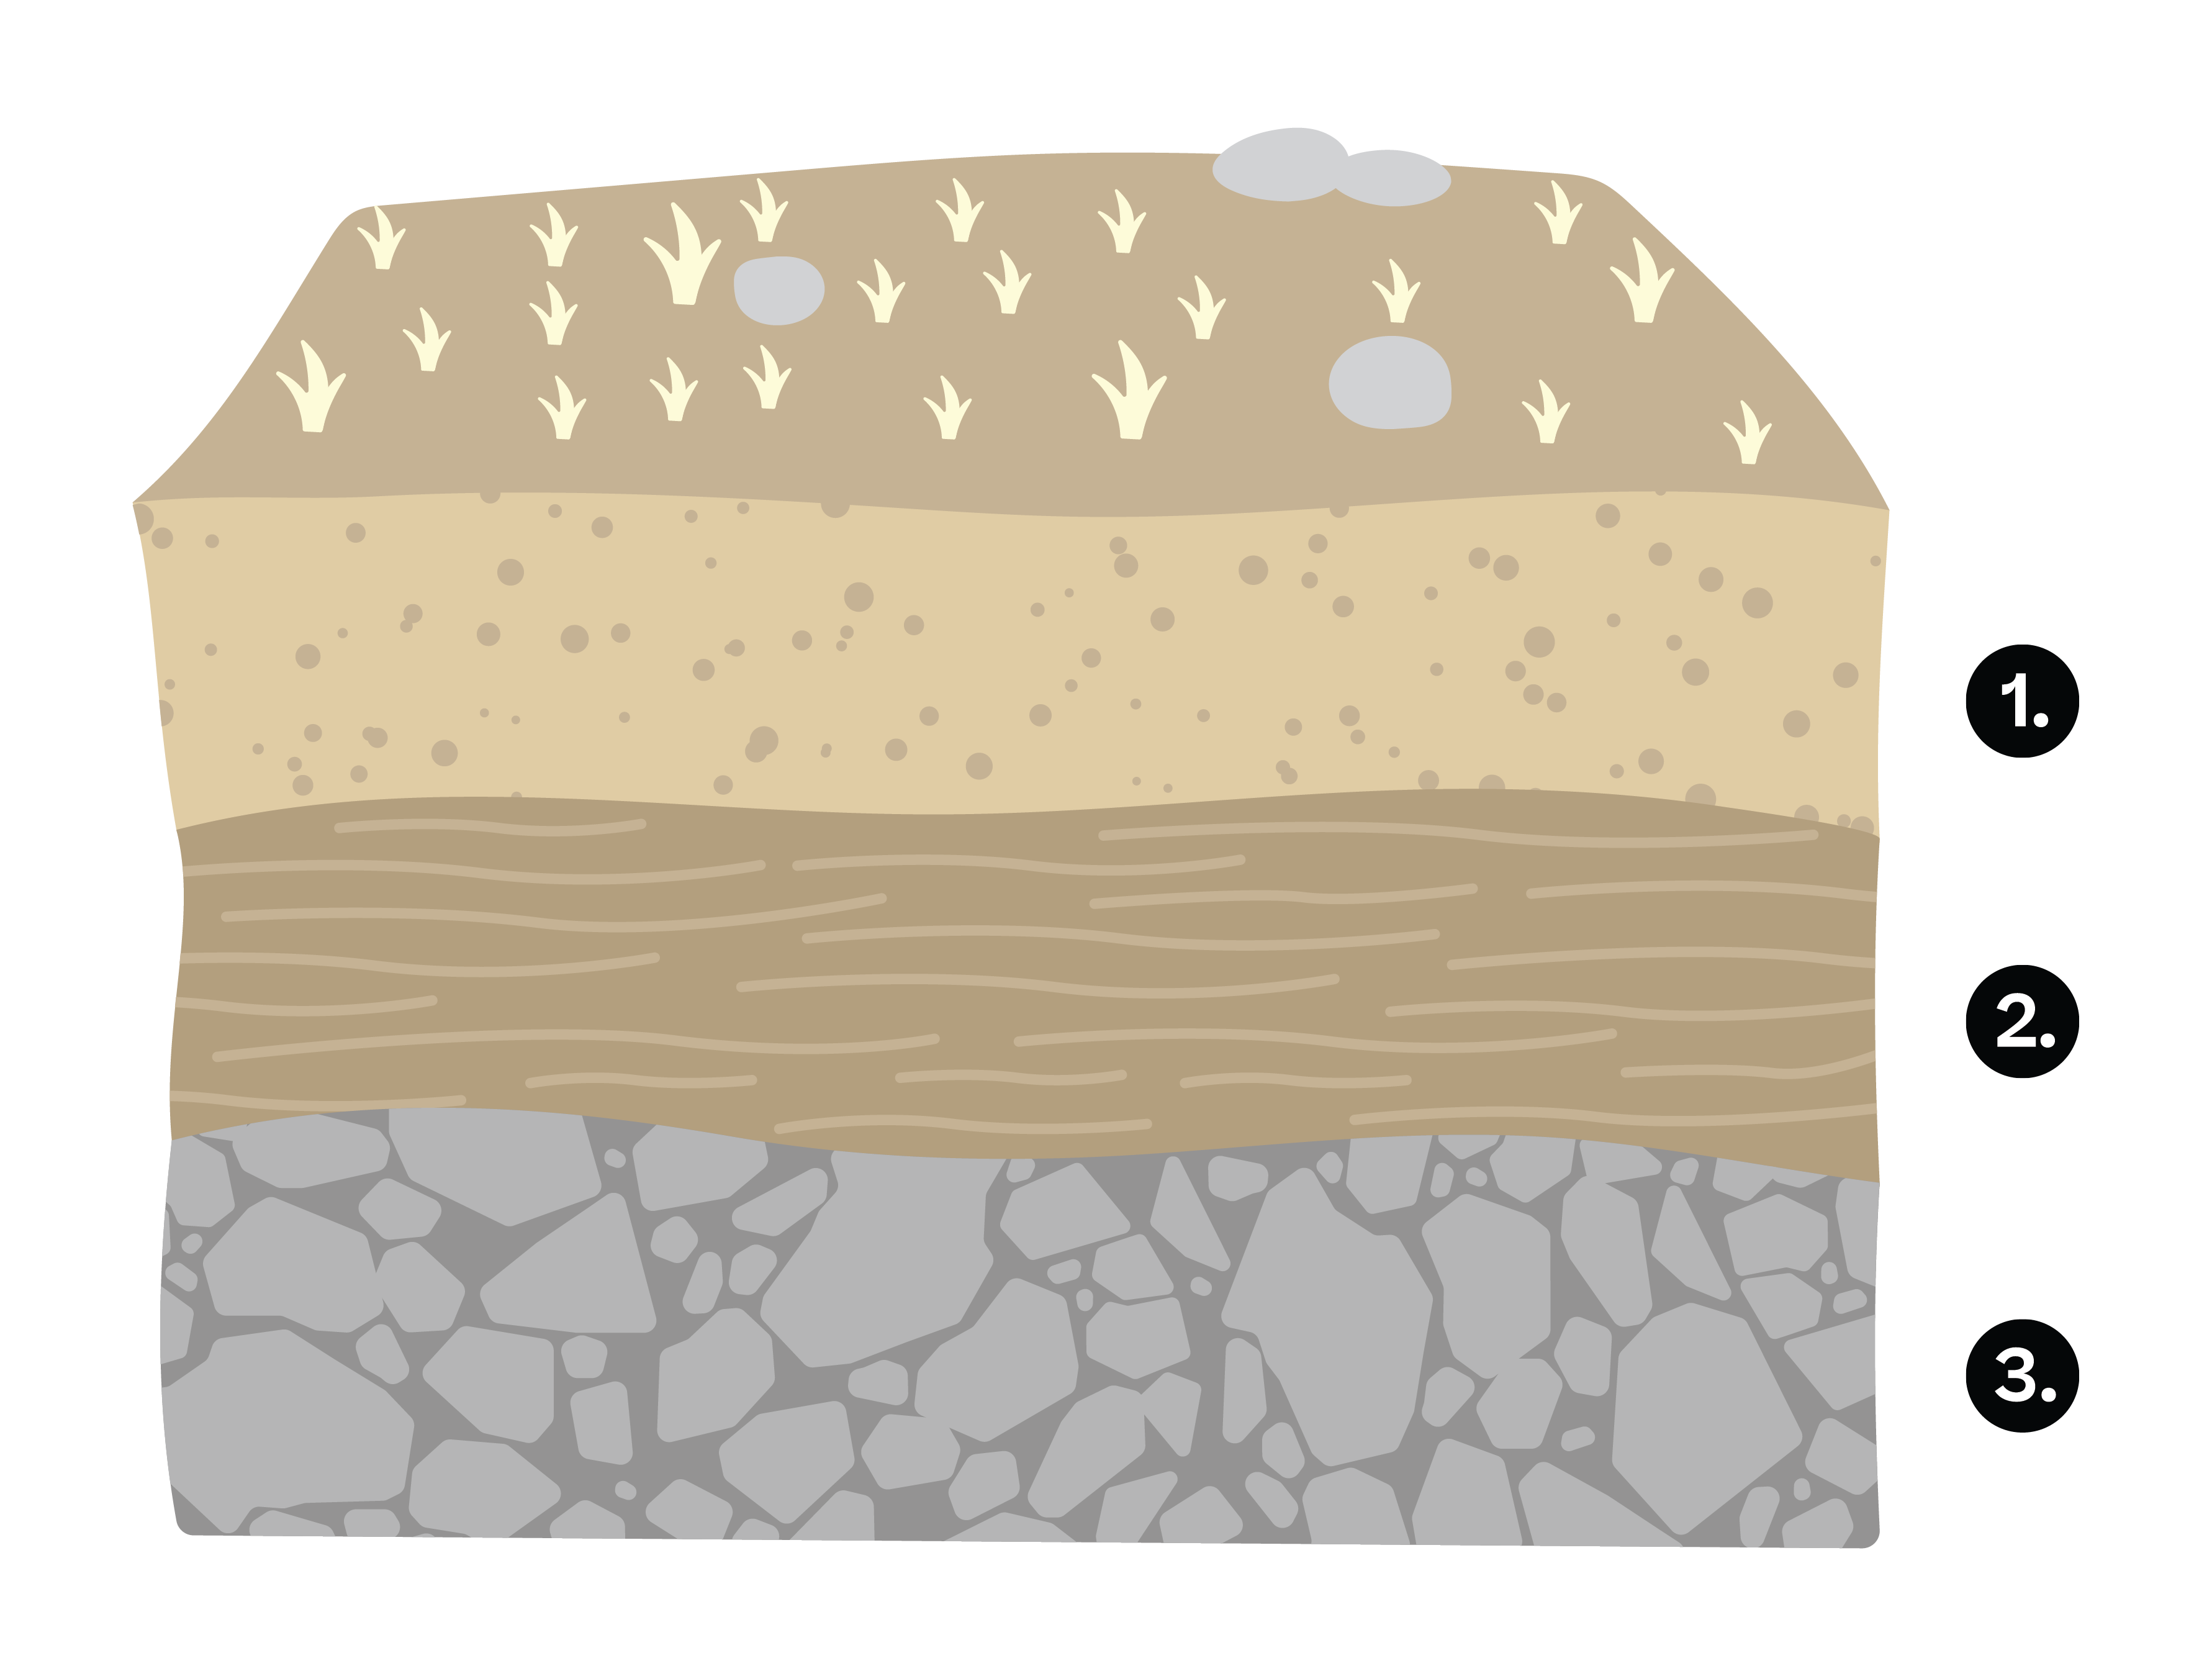 Biologia e Geologia; Rochas; 10º Ano; Rochas sedimentares e sequências estratigráficas